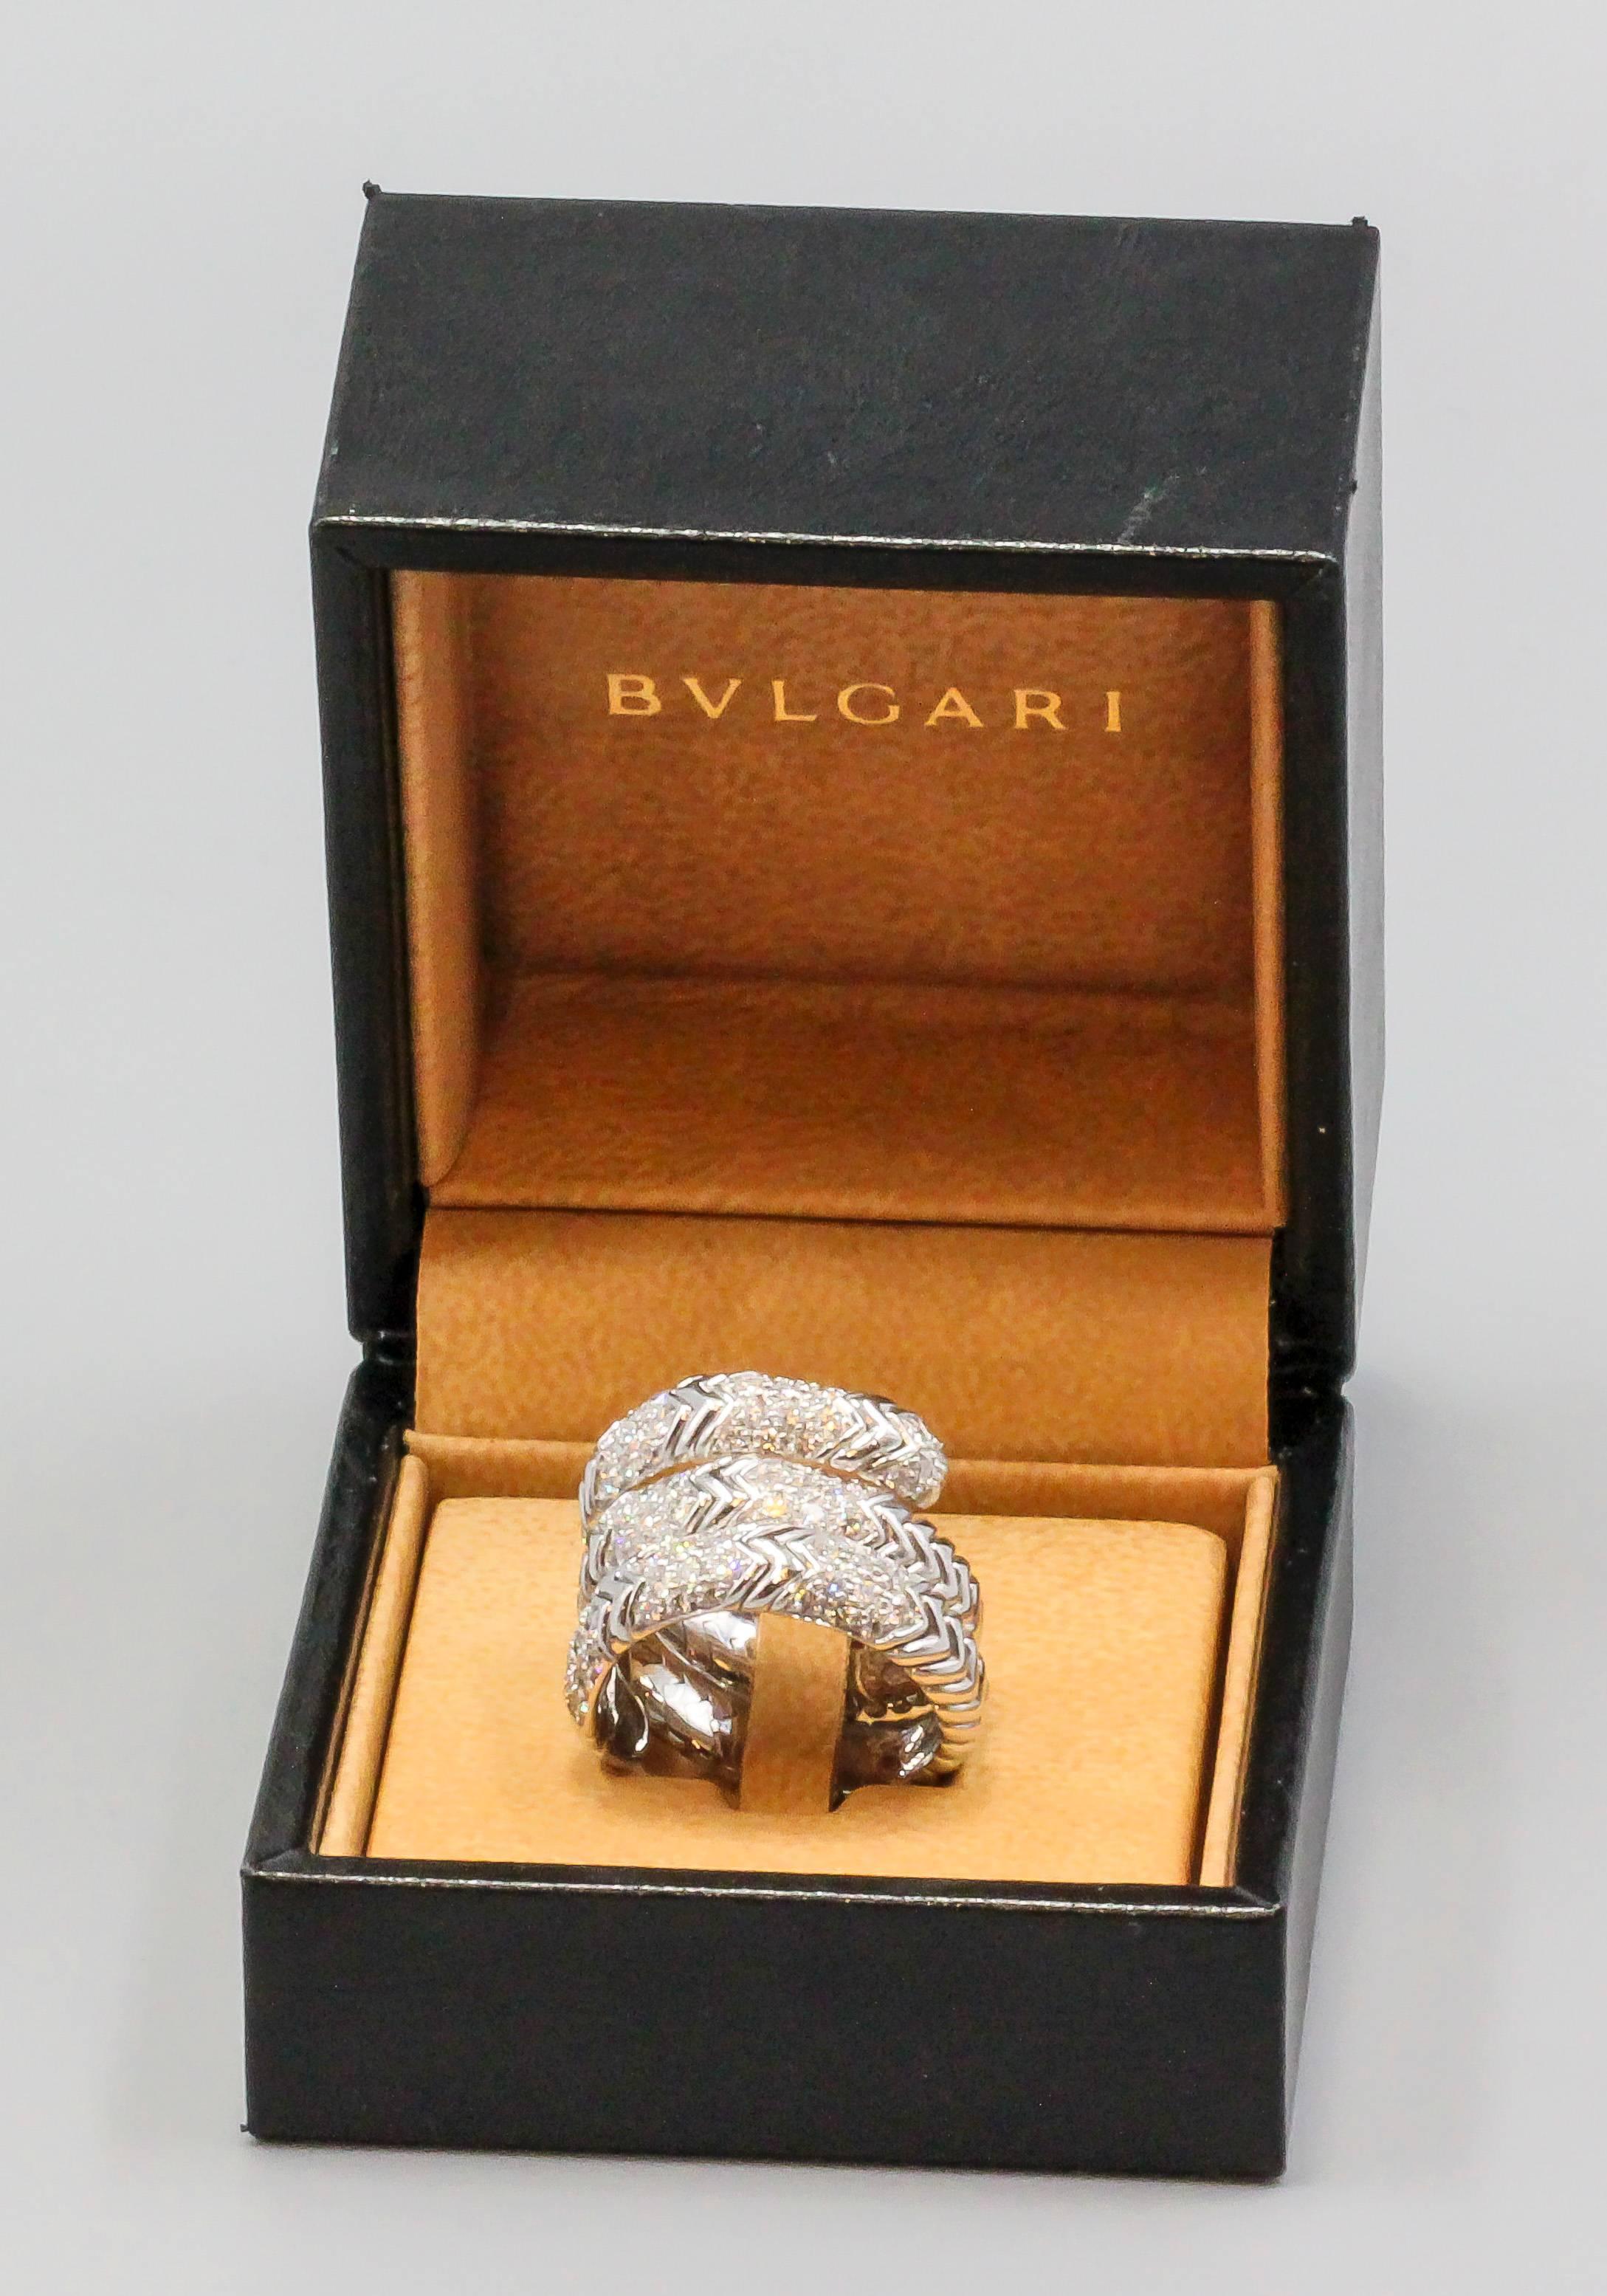 Bulgari Spiga Diamond and White Gold Flexible Snake Ring 3